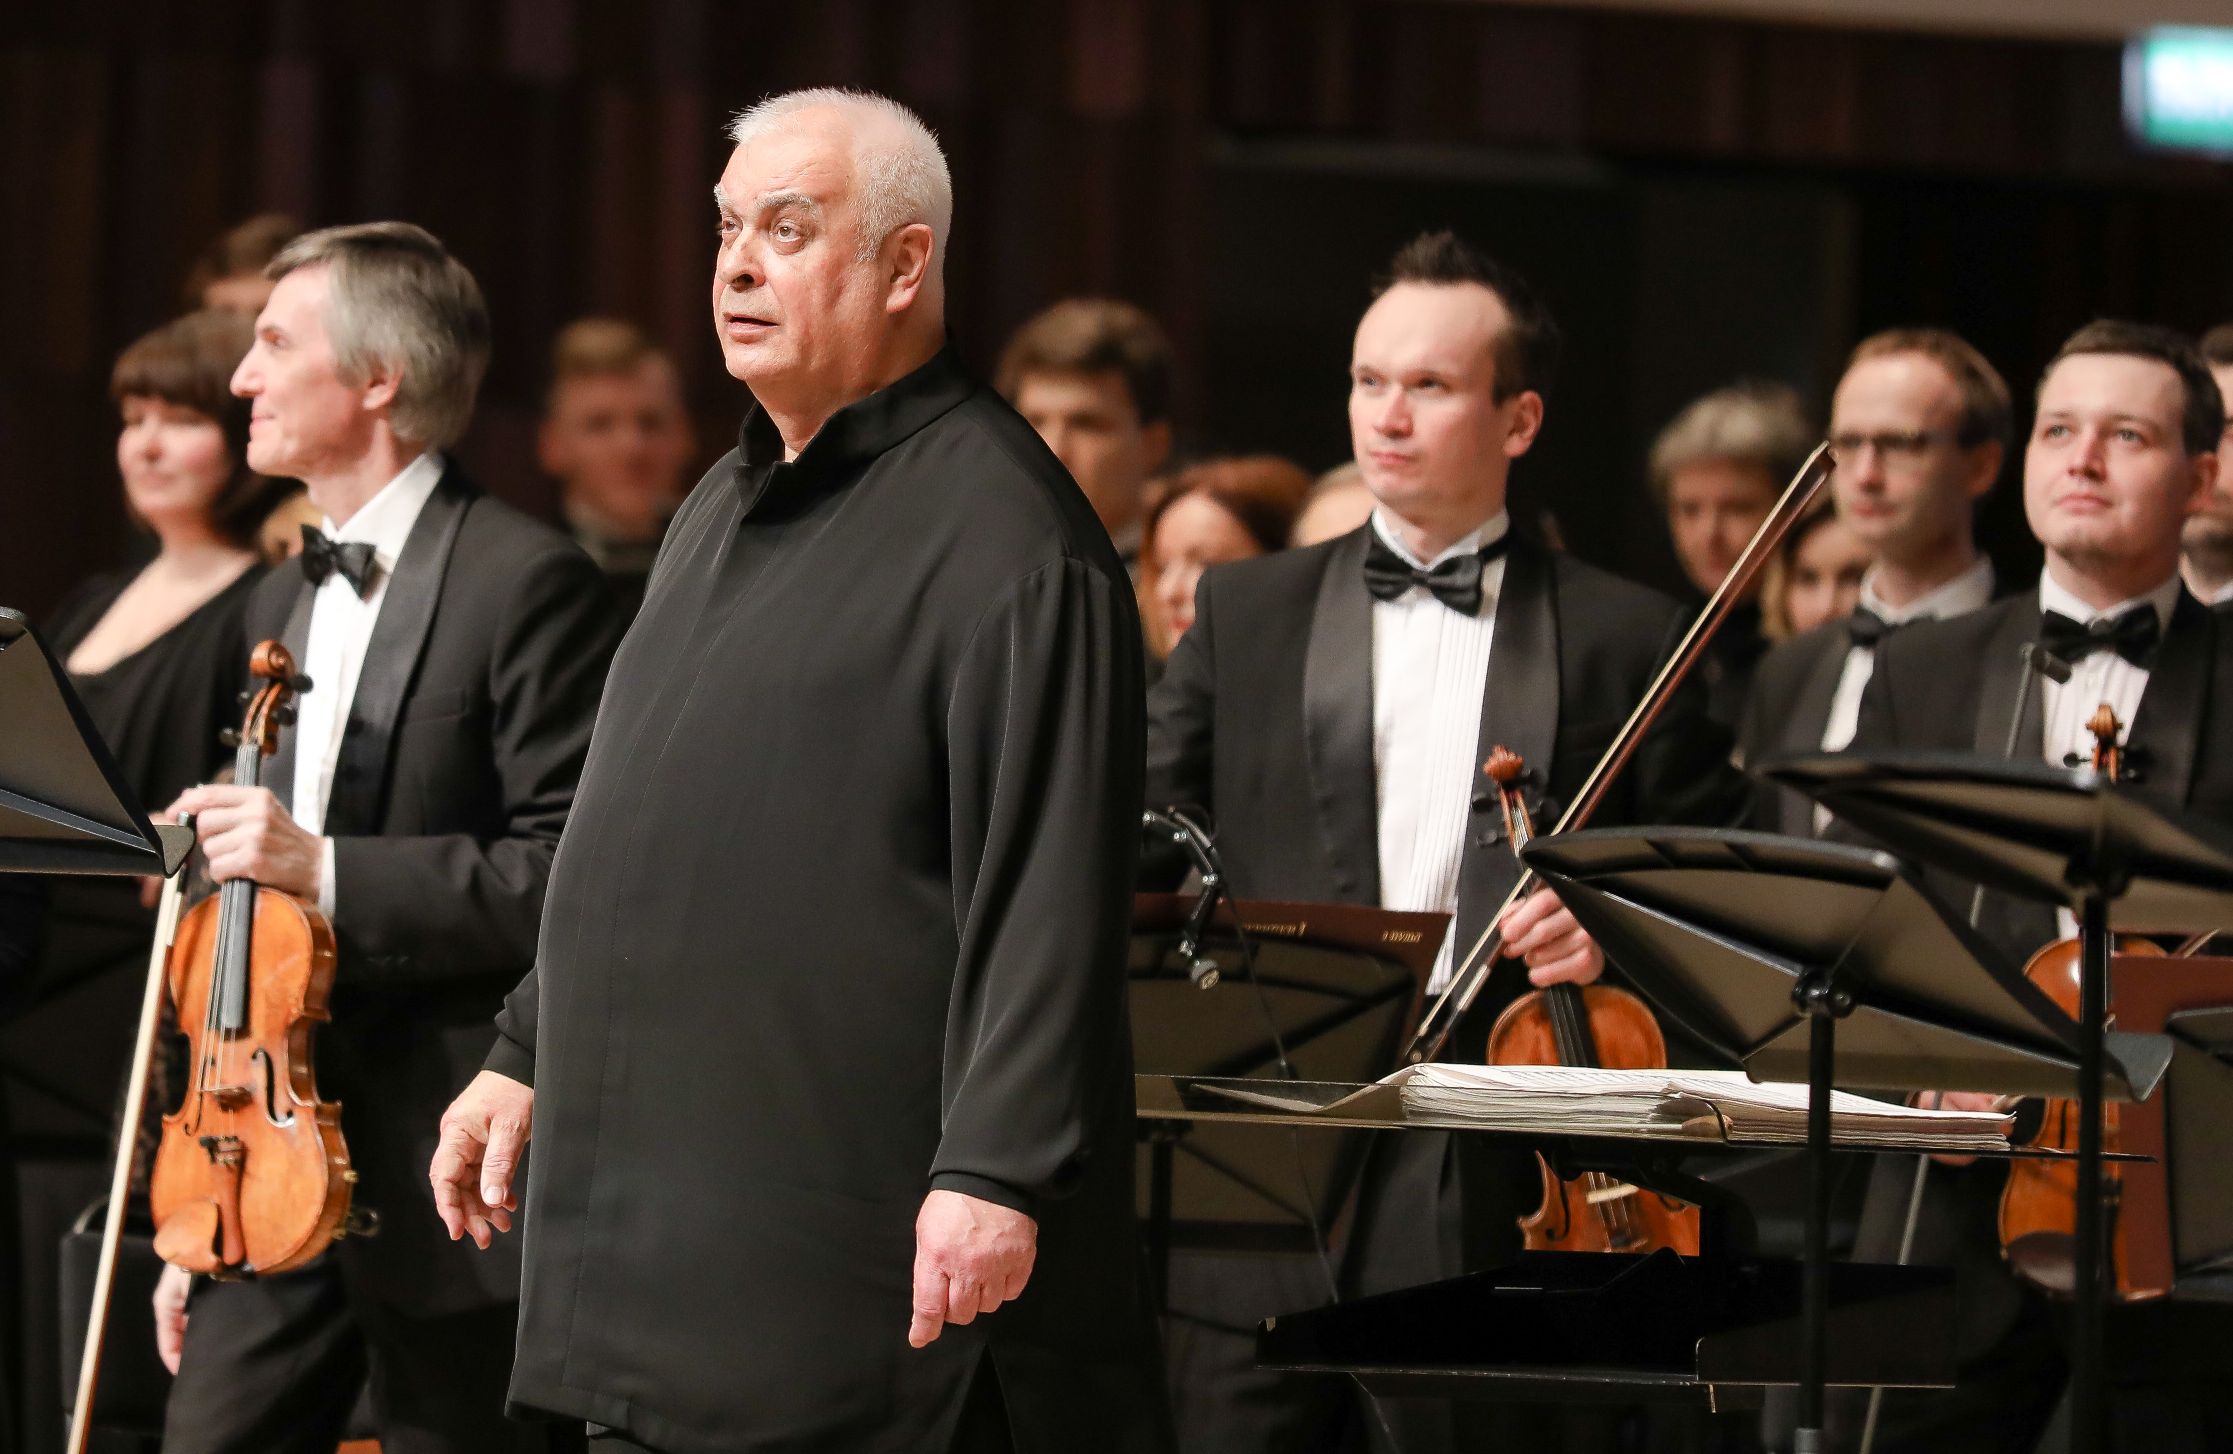 Strauss – Die Fledermaus (The Bat) GASK of Russia Conductor – Valery Polyansky